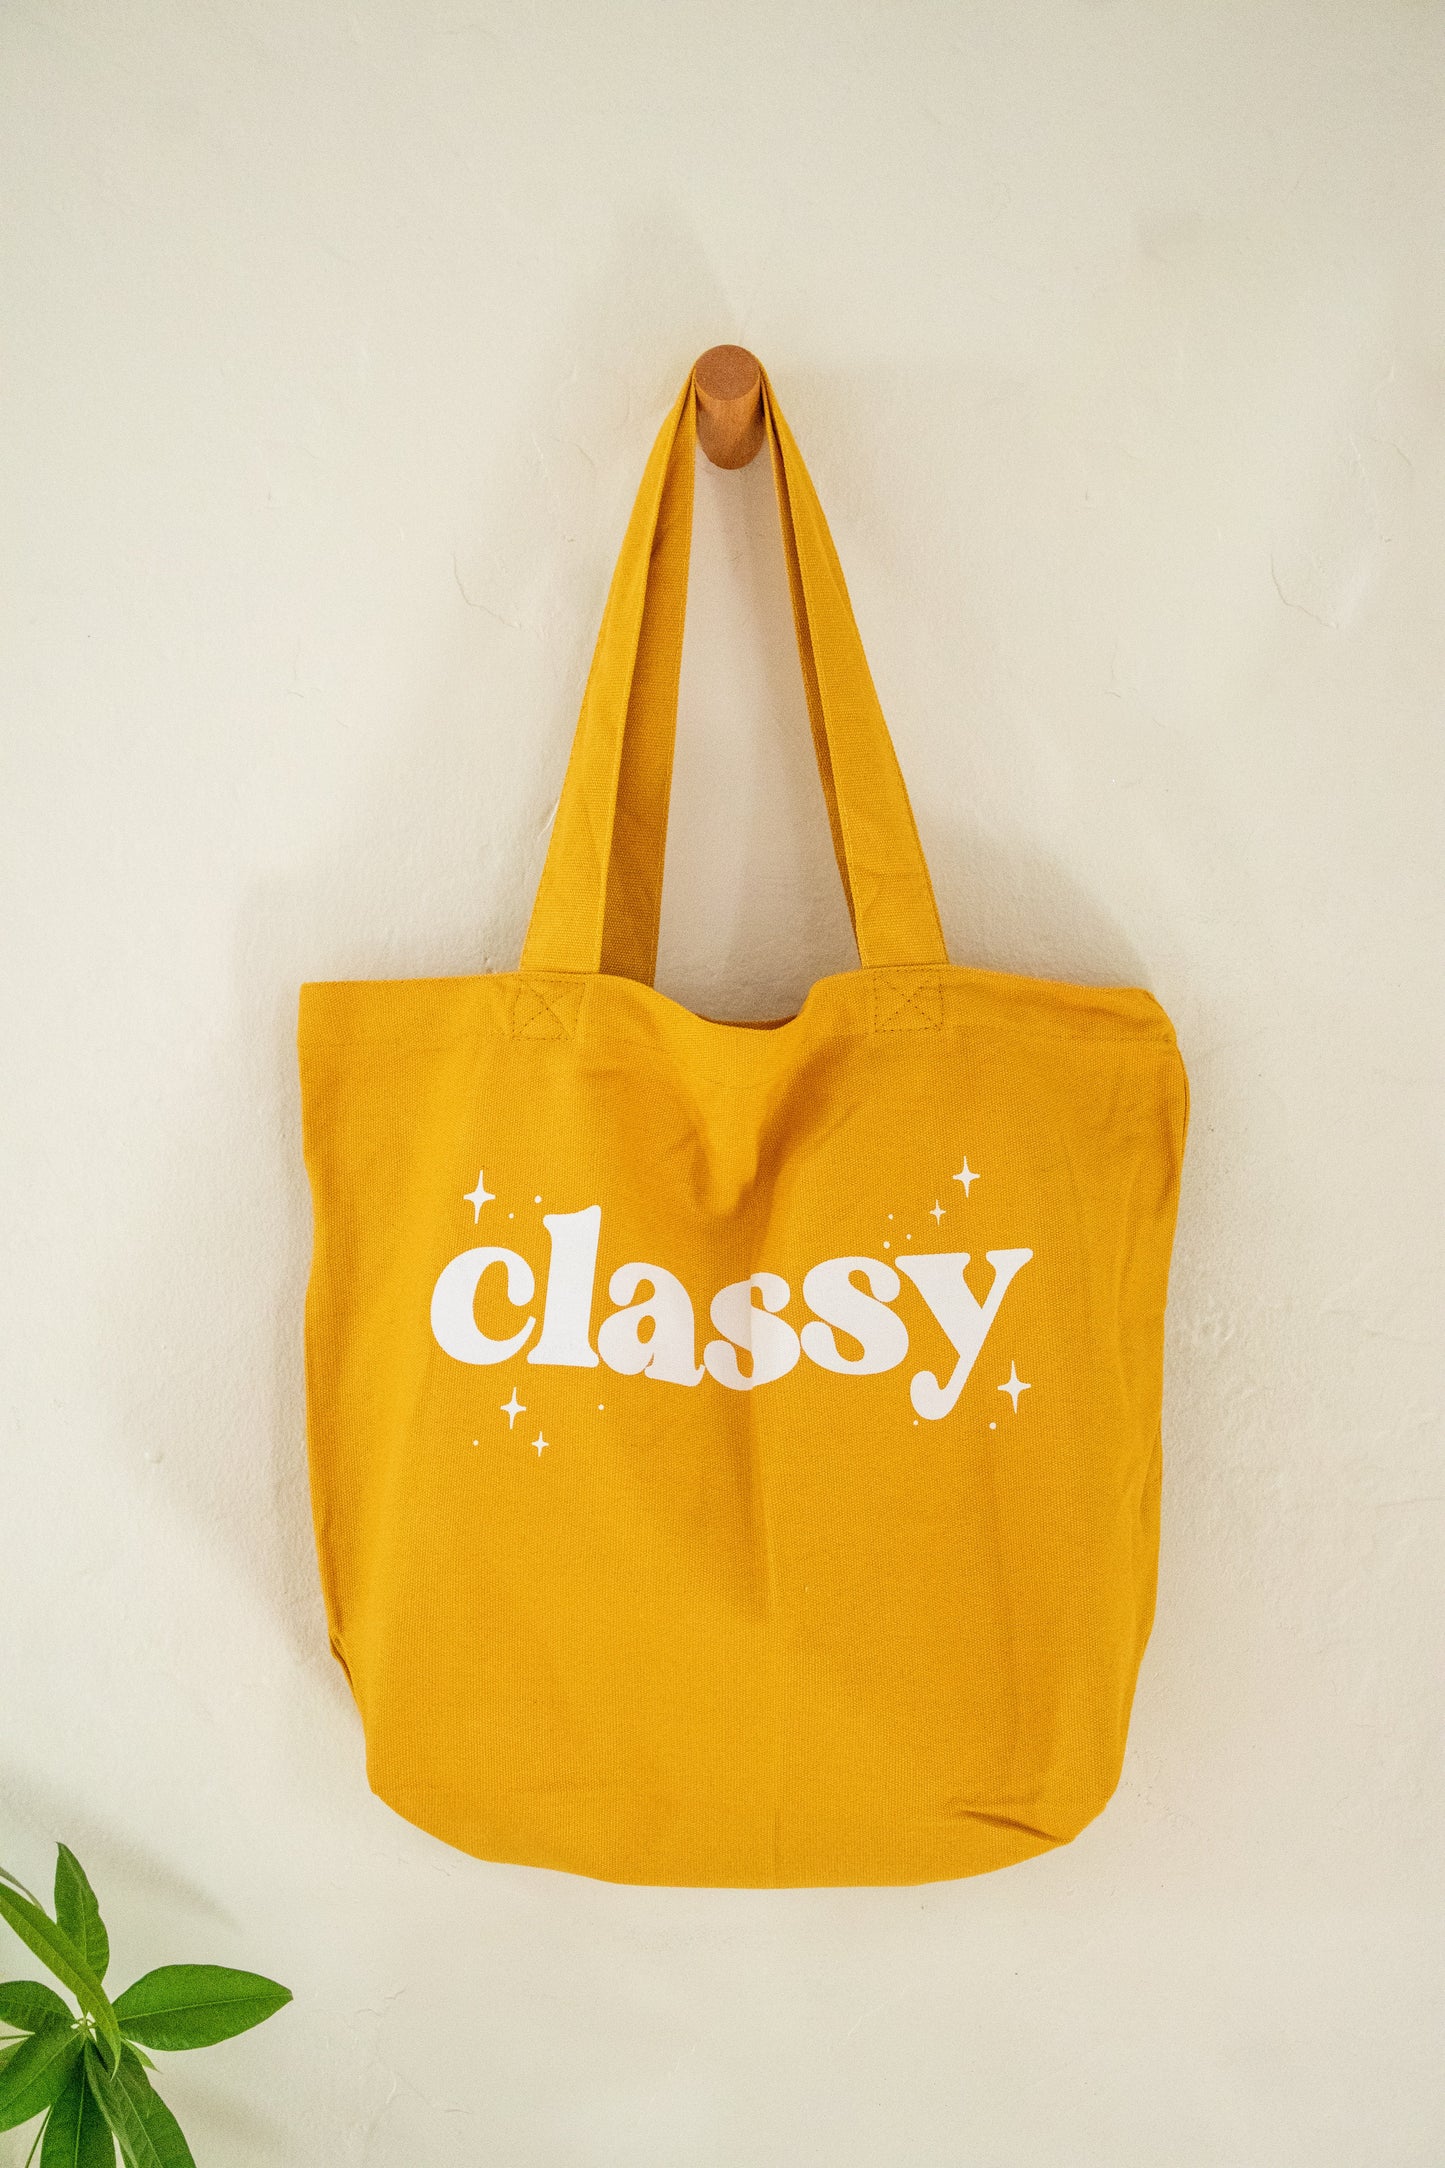 Classy Tote Bag